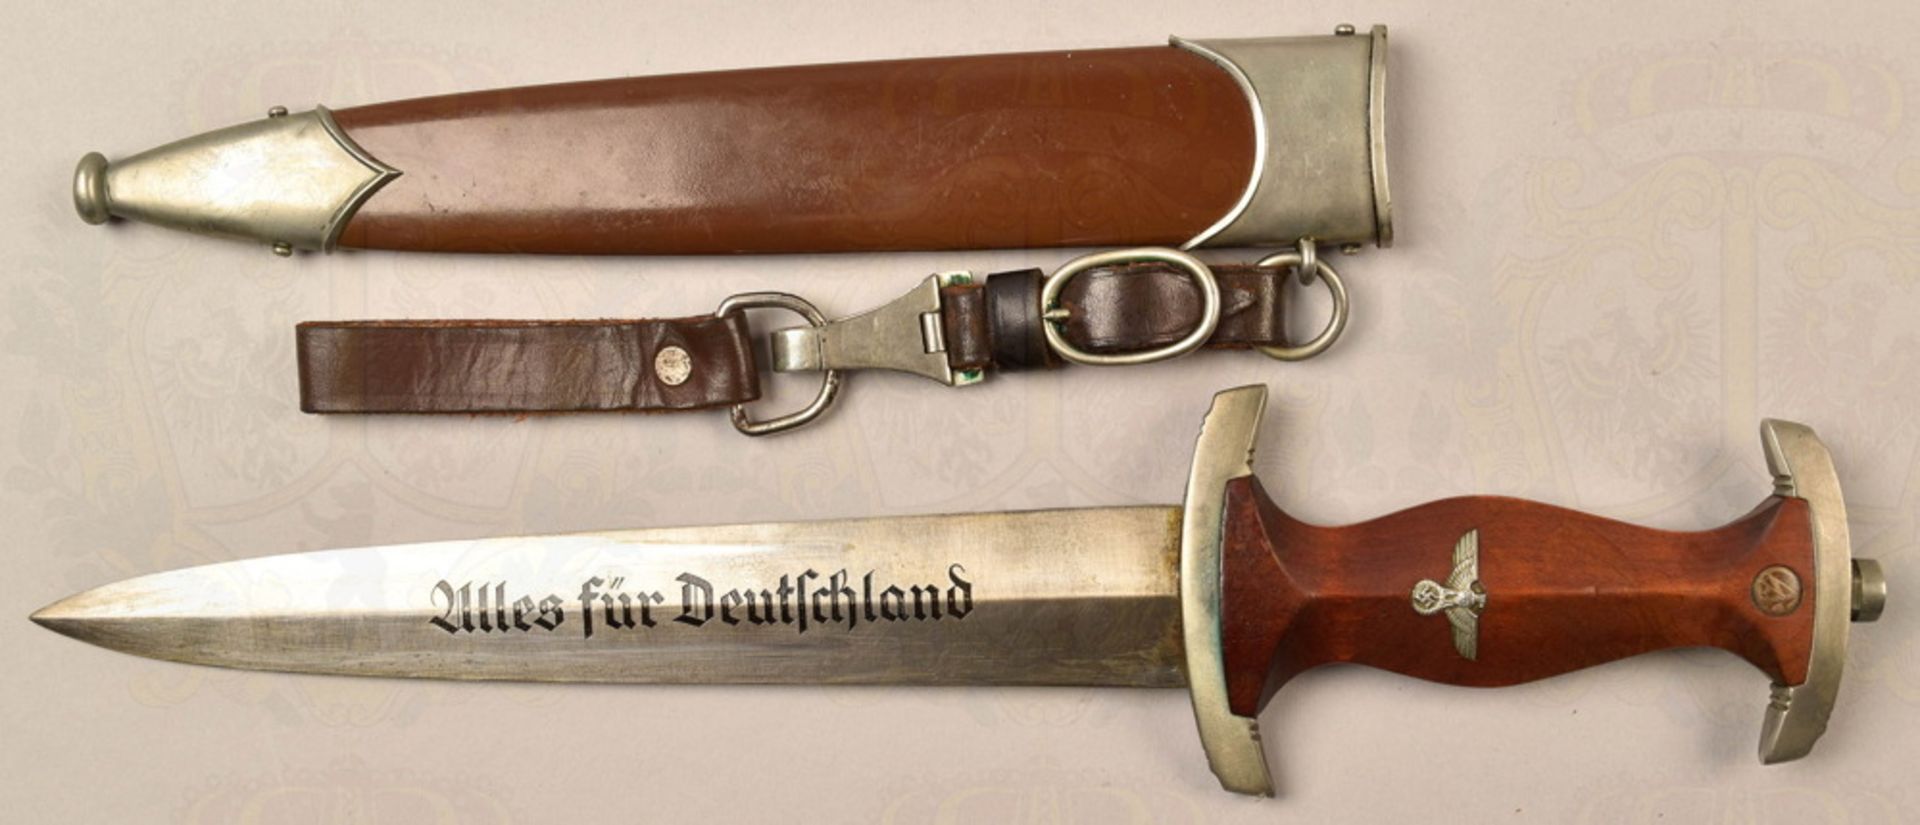 SA service dagger pattern 1933 with maker Carl Wüsthof Solingen - Image 2 of 11